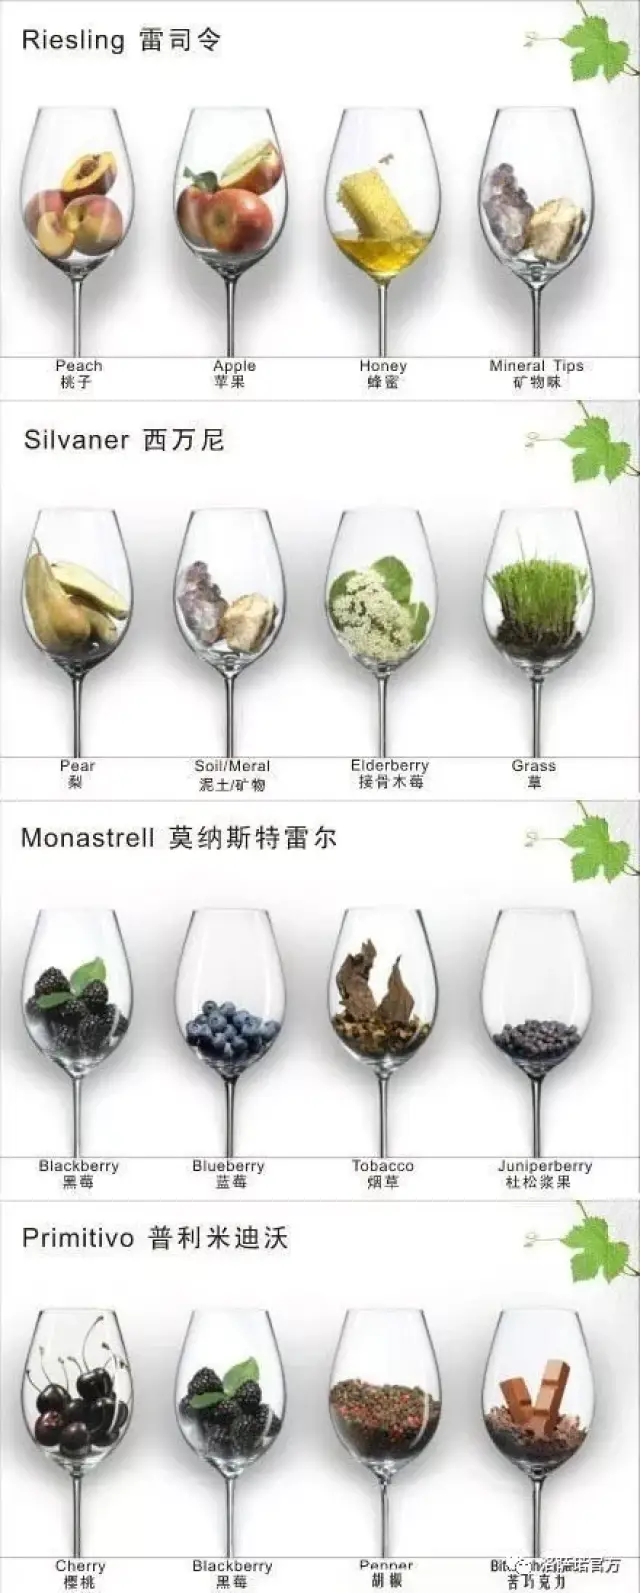 葡萄酒葡萄品种